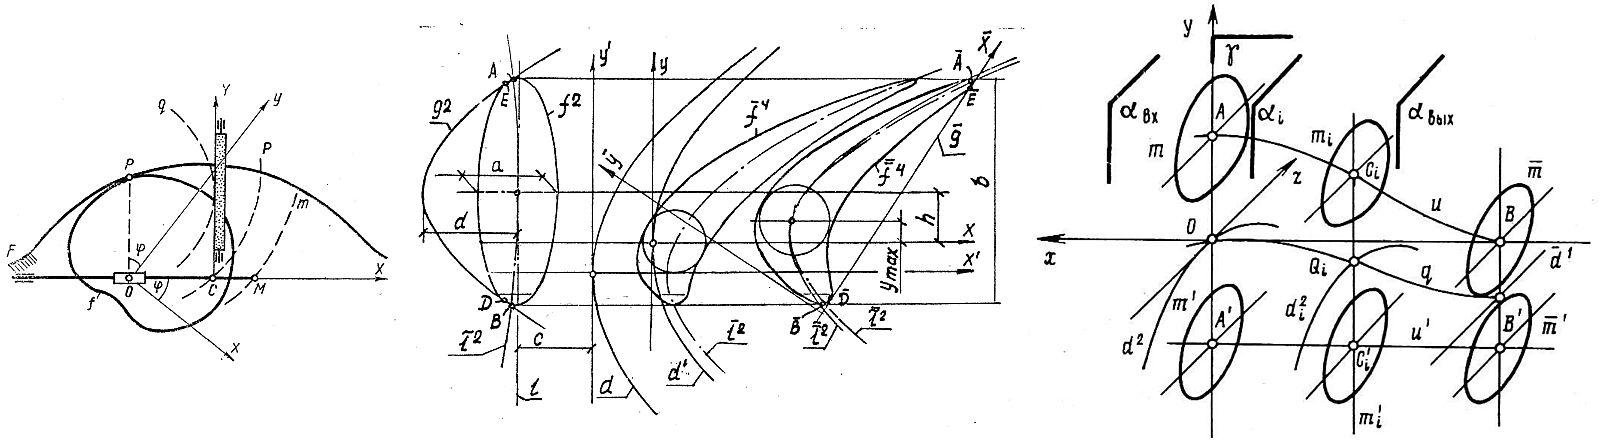 Рис. 1. Применение нелинейных преобразований: а — проектирование механизма [2], б — аэродинамического профиля [5], в — каналовой поверхности [6], г — архитектурной оболочки [7], д — судовой поверхности [8]